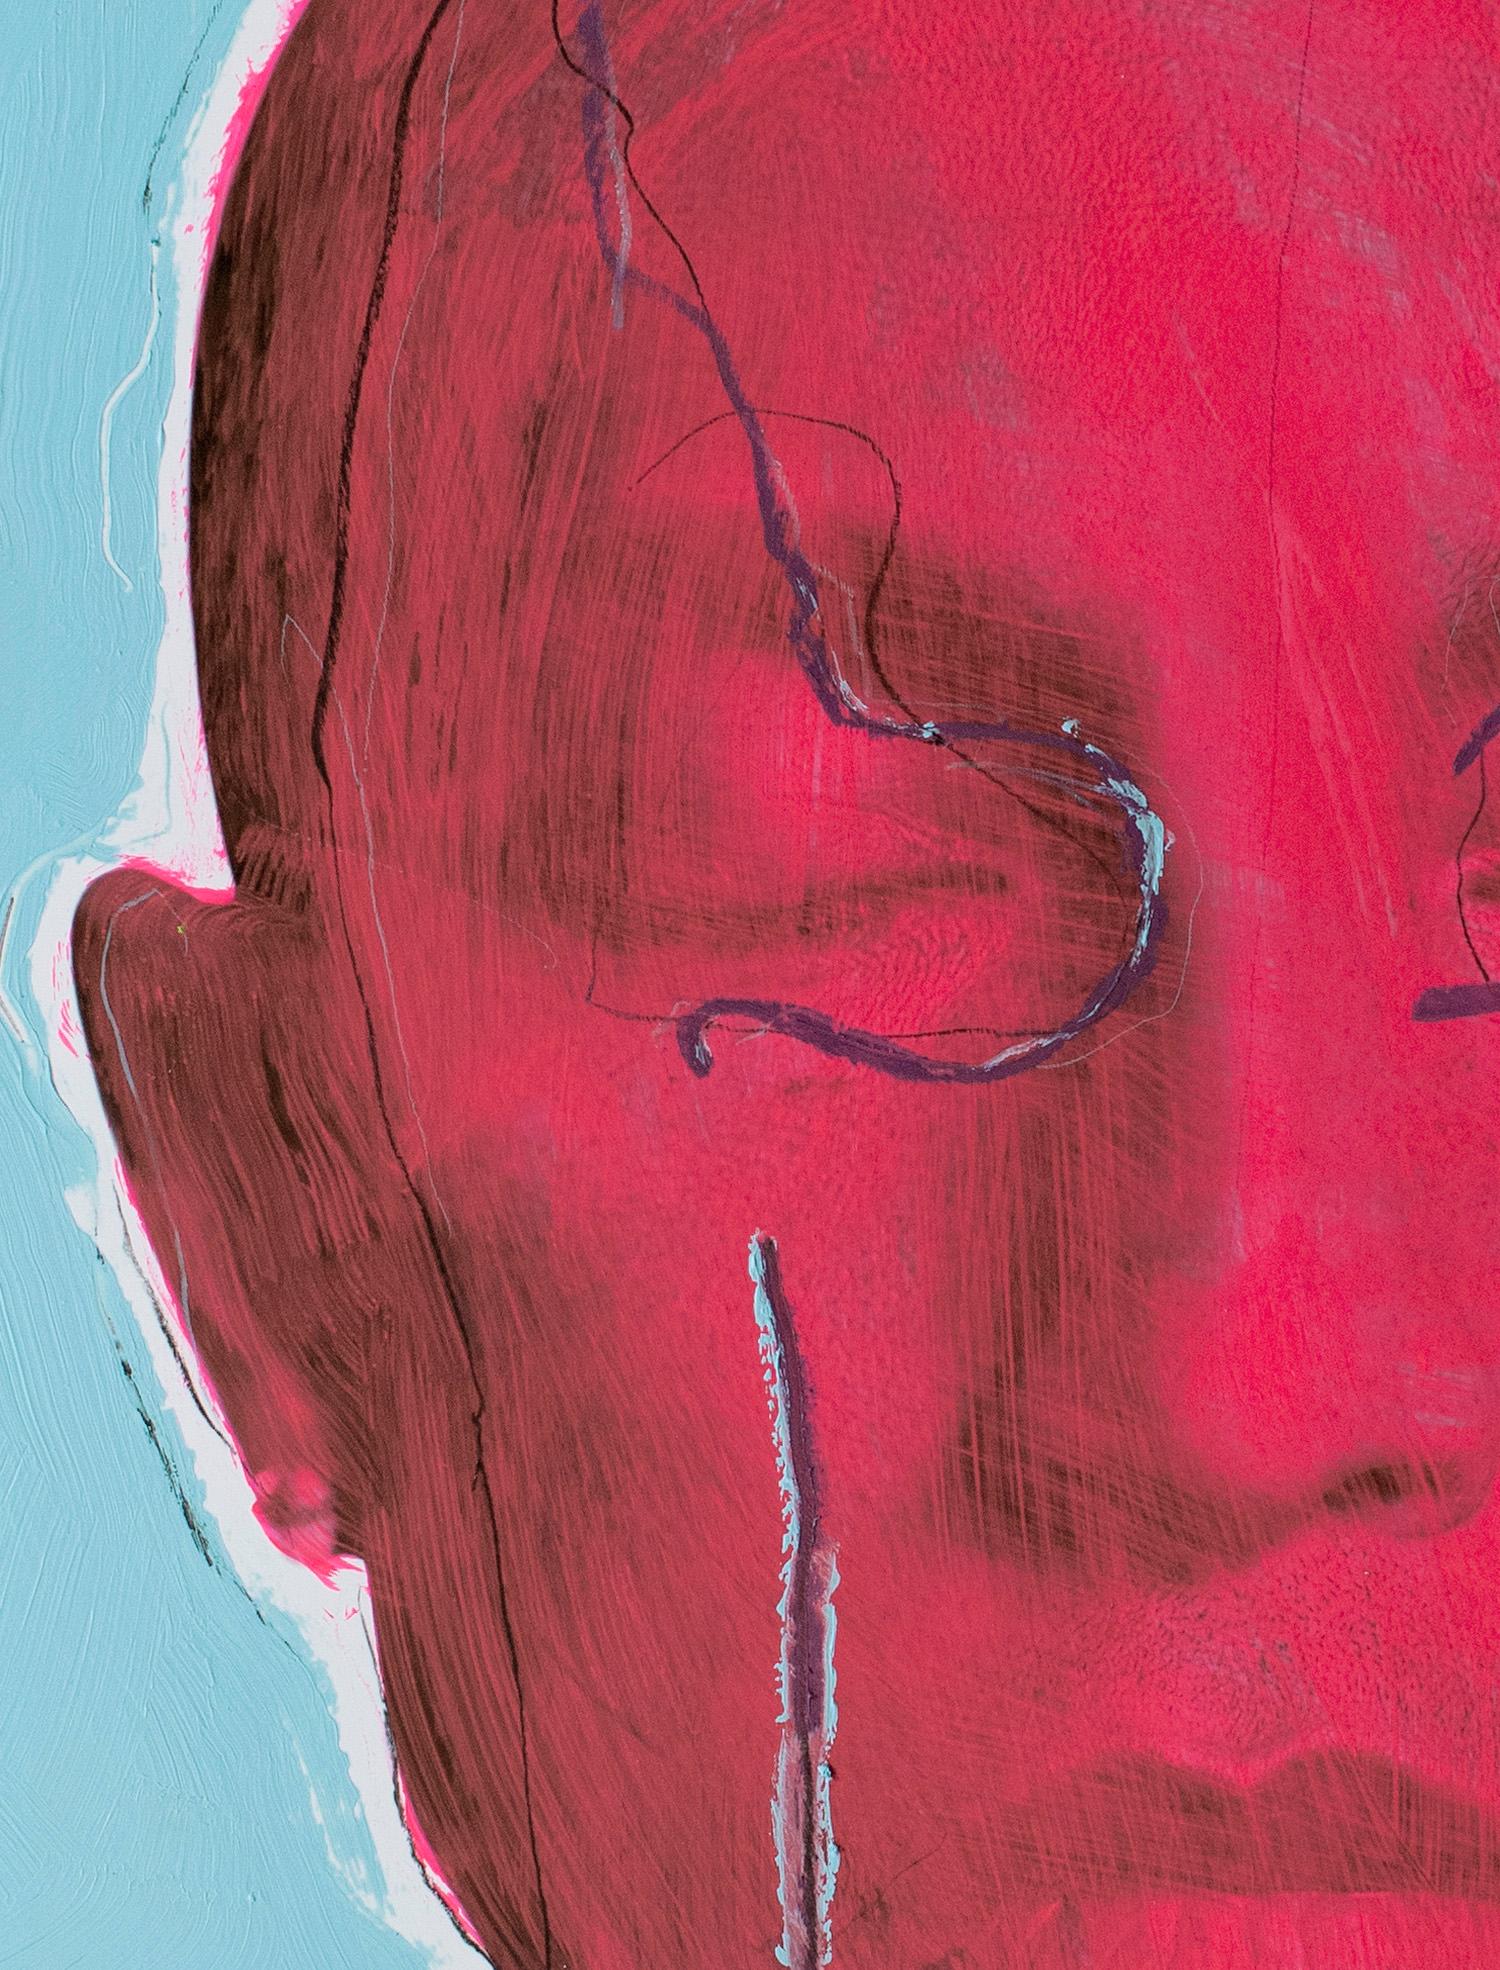 Temporaire, Pharrell Williams Porträt (gerahmt) 2020, von Hunter & Gatti
Acryl und Ölpastell auf Pigmentdruck
Bildgröße: 76 cm. H x 61 cm. W
Gerahmte Größe: 90,5 cm. H x 82,5 cm. B x 5 cm. D
Einzigartig

In LIVE FOREVER, der neuen Serie von Acryl-